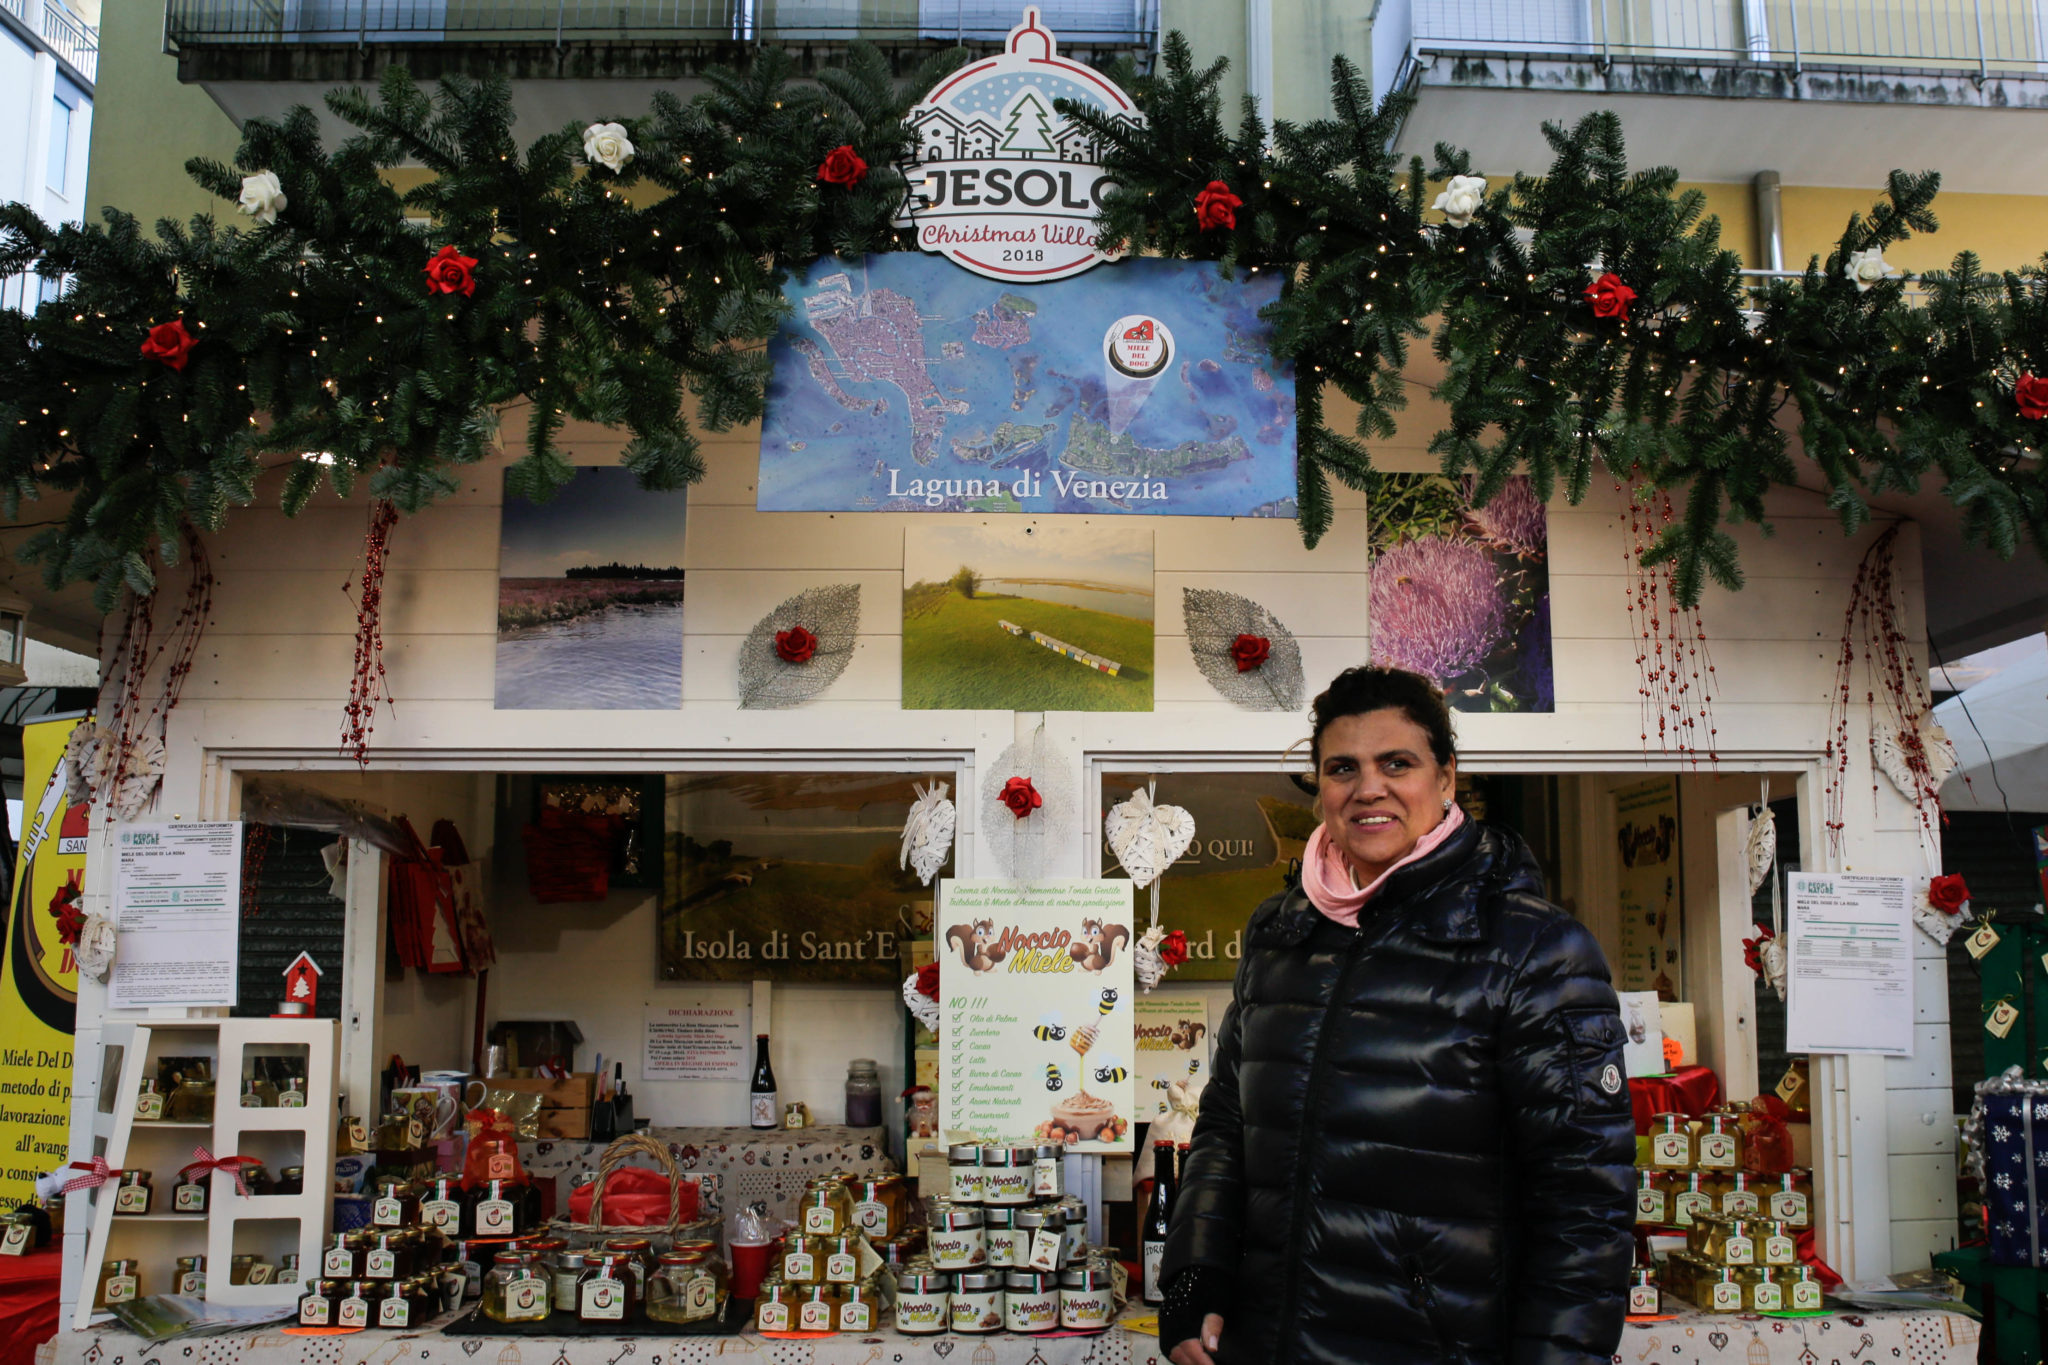 Ritratti e storie di alcuni abitanti delle 70 casette in legno del mercatino di Natale di Jesolo, fra miele, gioielli e giostre